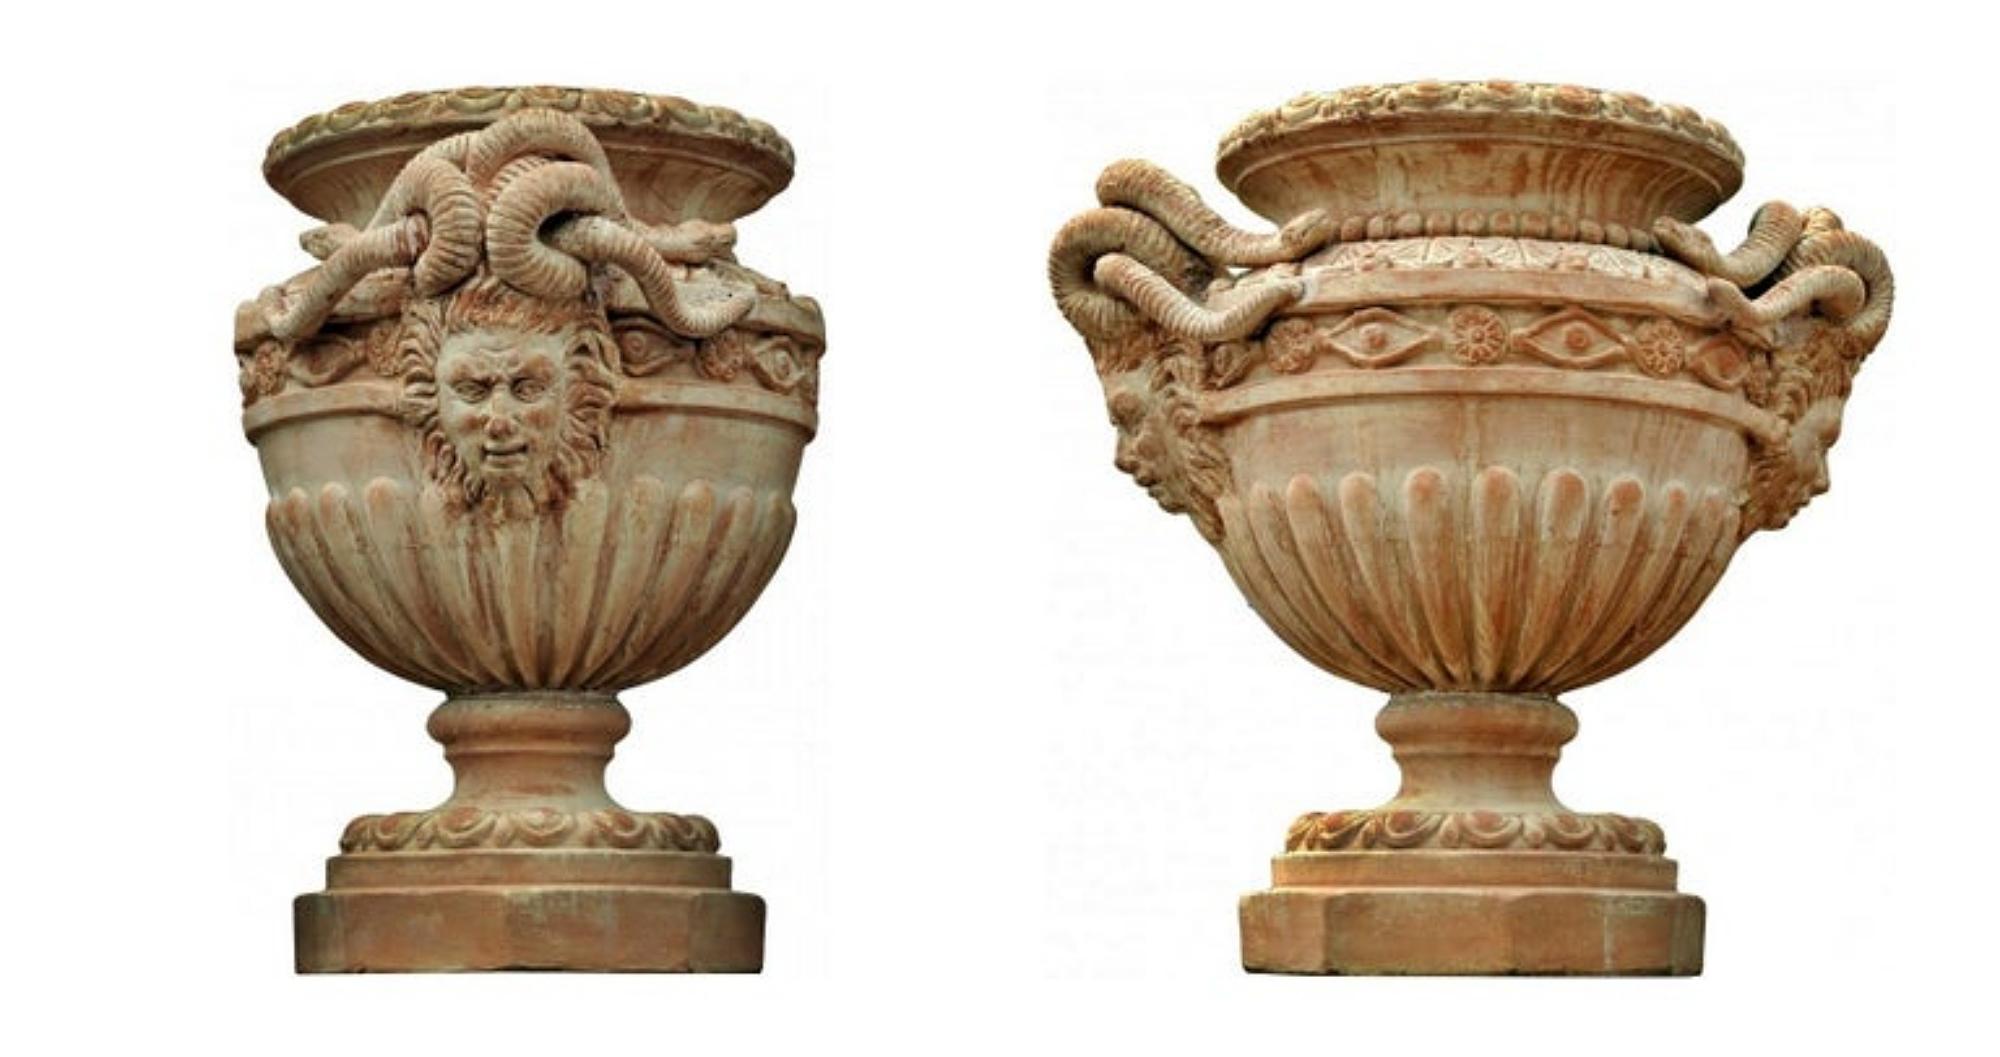 Grand vase Mediceo Florentine Renaissance avec méduses

début du 20e siècle

Superbes grands vases à cosses avec deux grandes méduses et deux ronds d'ocelles romans.
Particulièrement soigné, très beau vase.

HAUTEUR 75 cm
BASE OCTAGONALE Ø 40